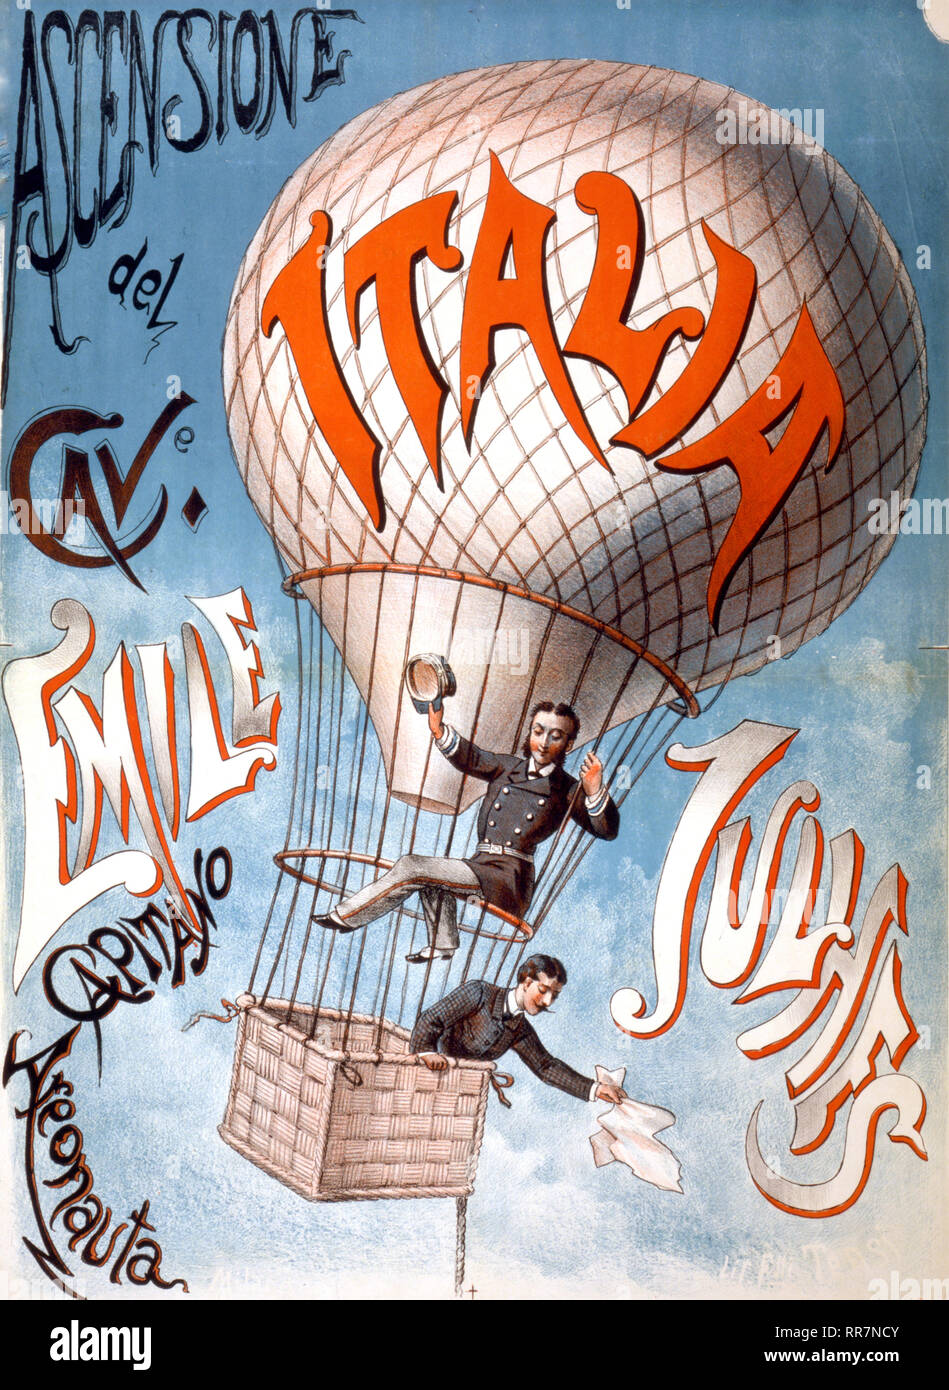 Ascensione del grotte. Emile Julhes, capitano areonauta - Italien affiche montre deux hommes dans un ballon captif étiqueté Italia 1880-1900 Banque D'Images